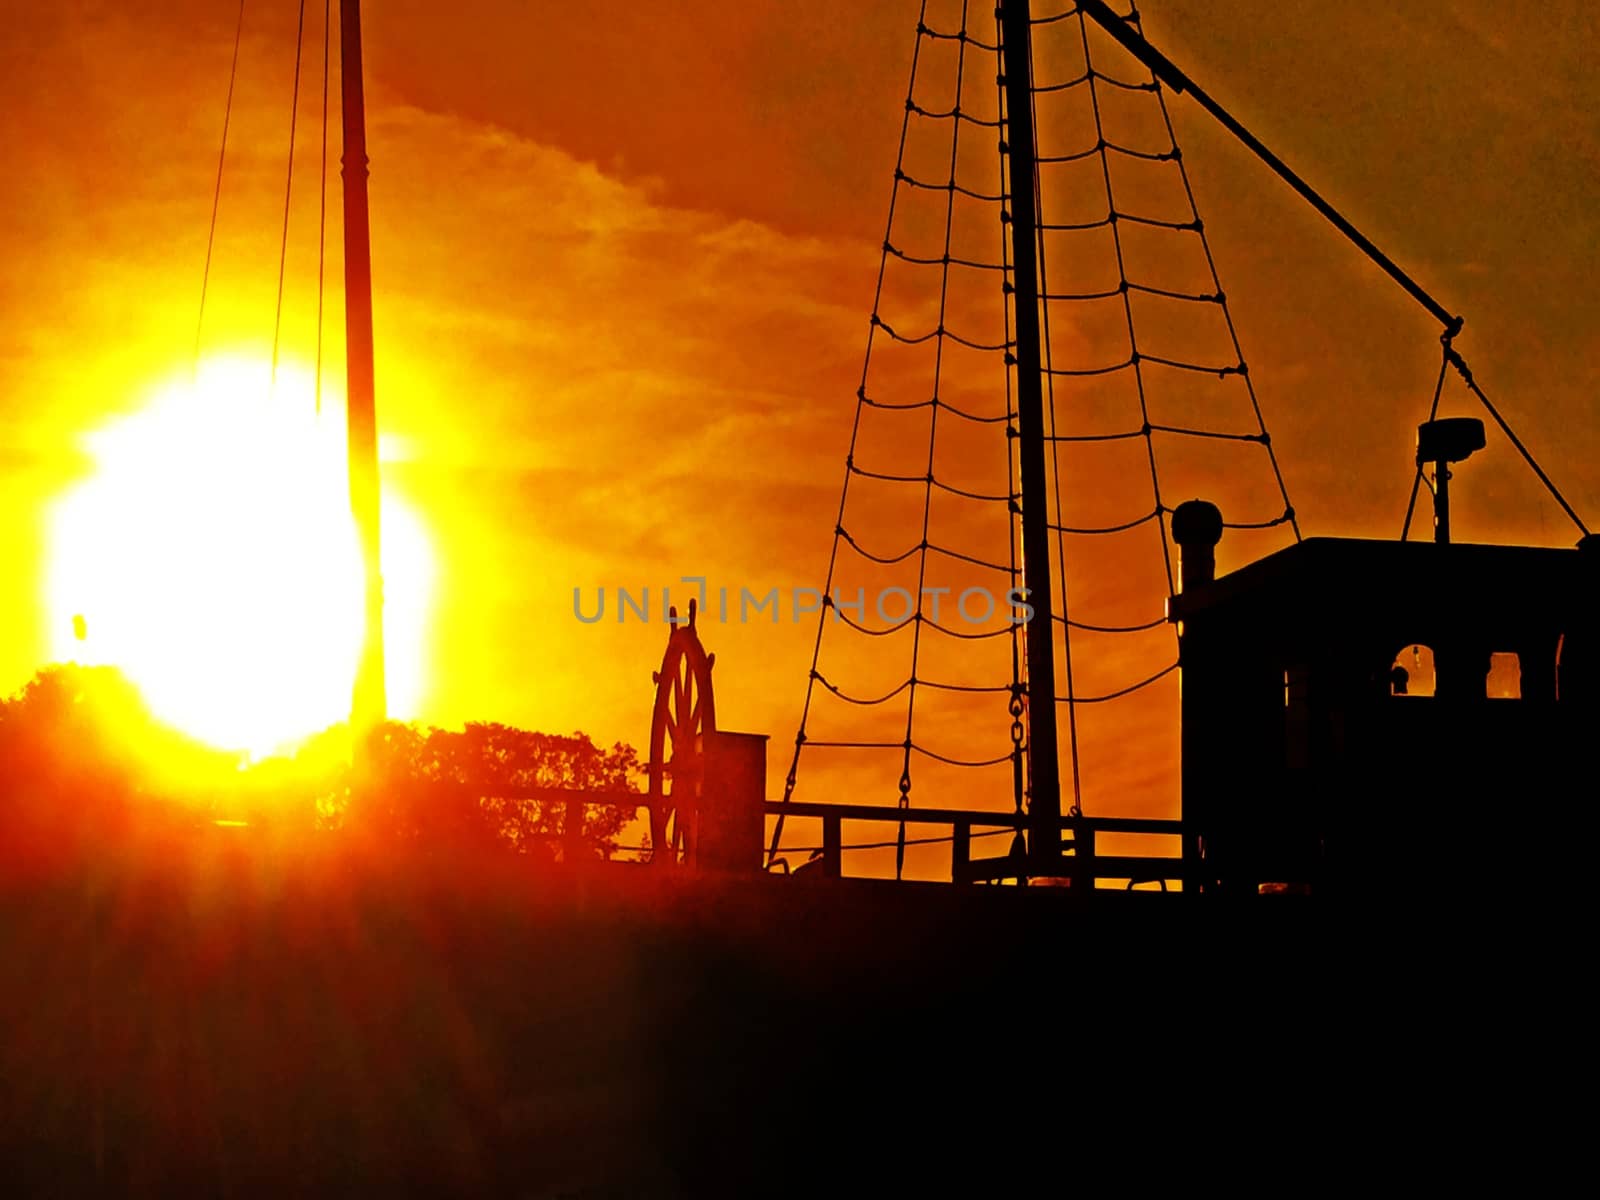 Sunset on a boat by Jochen